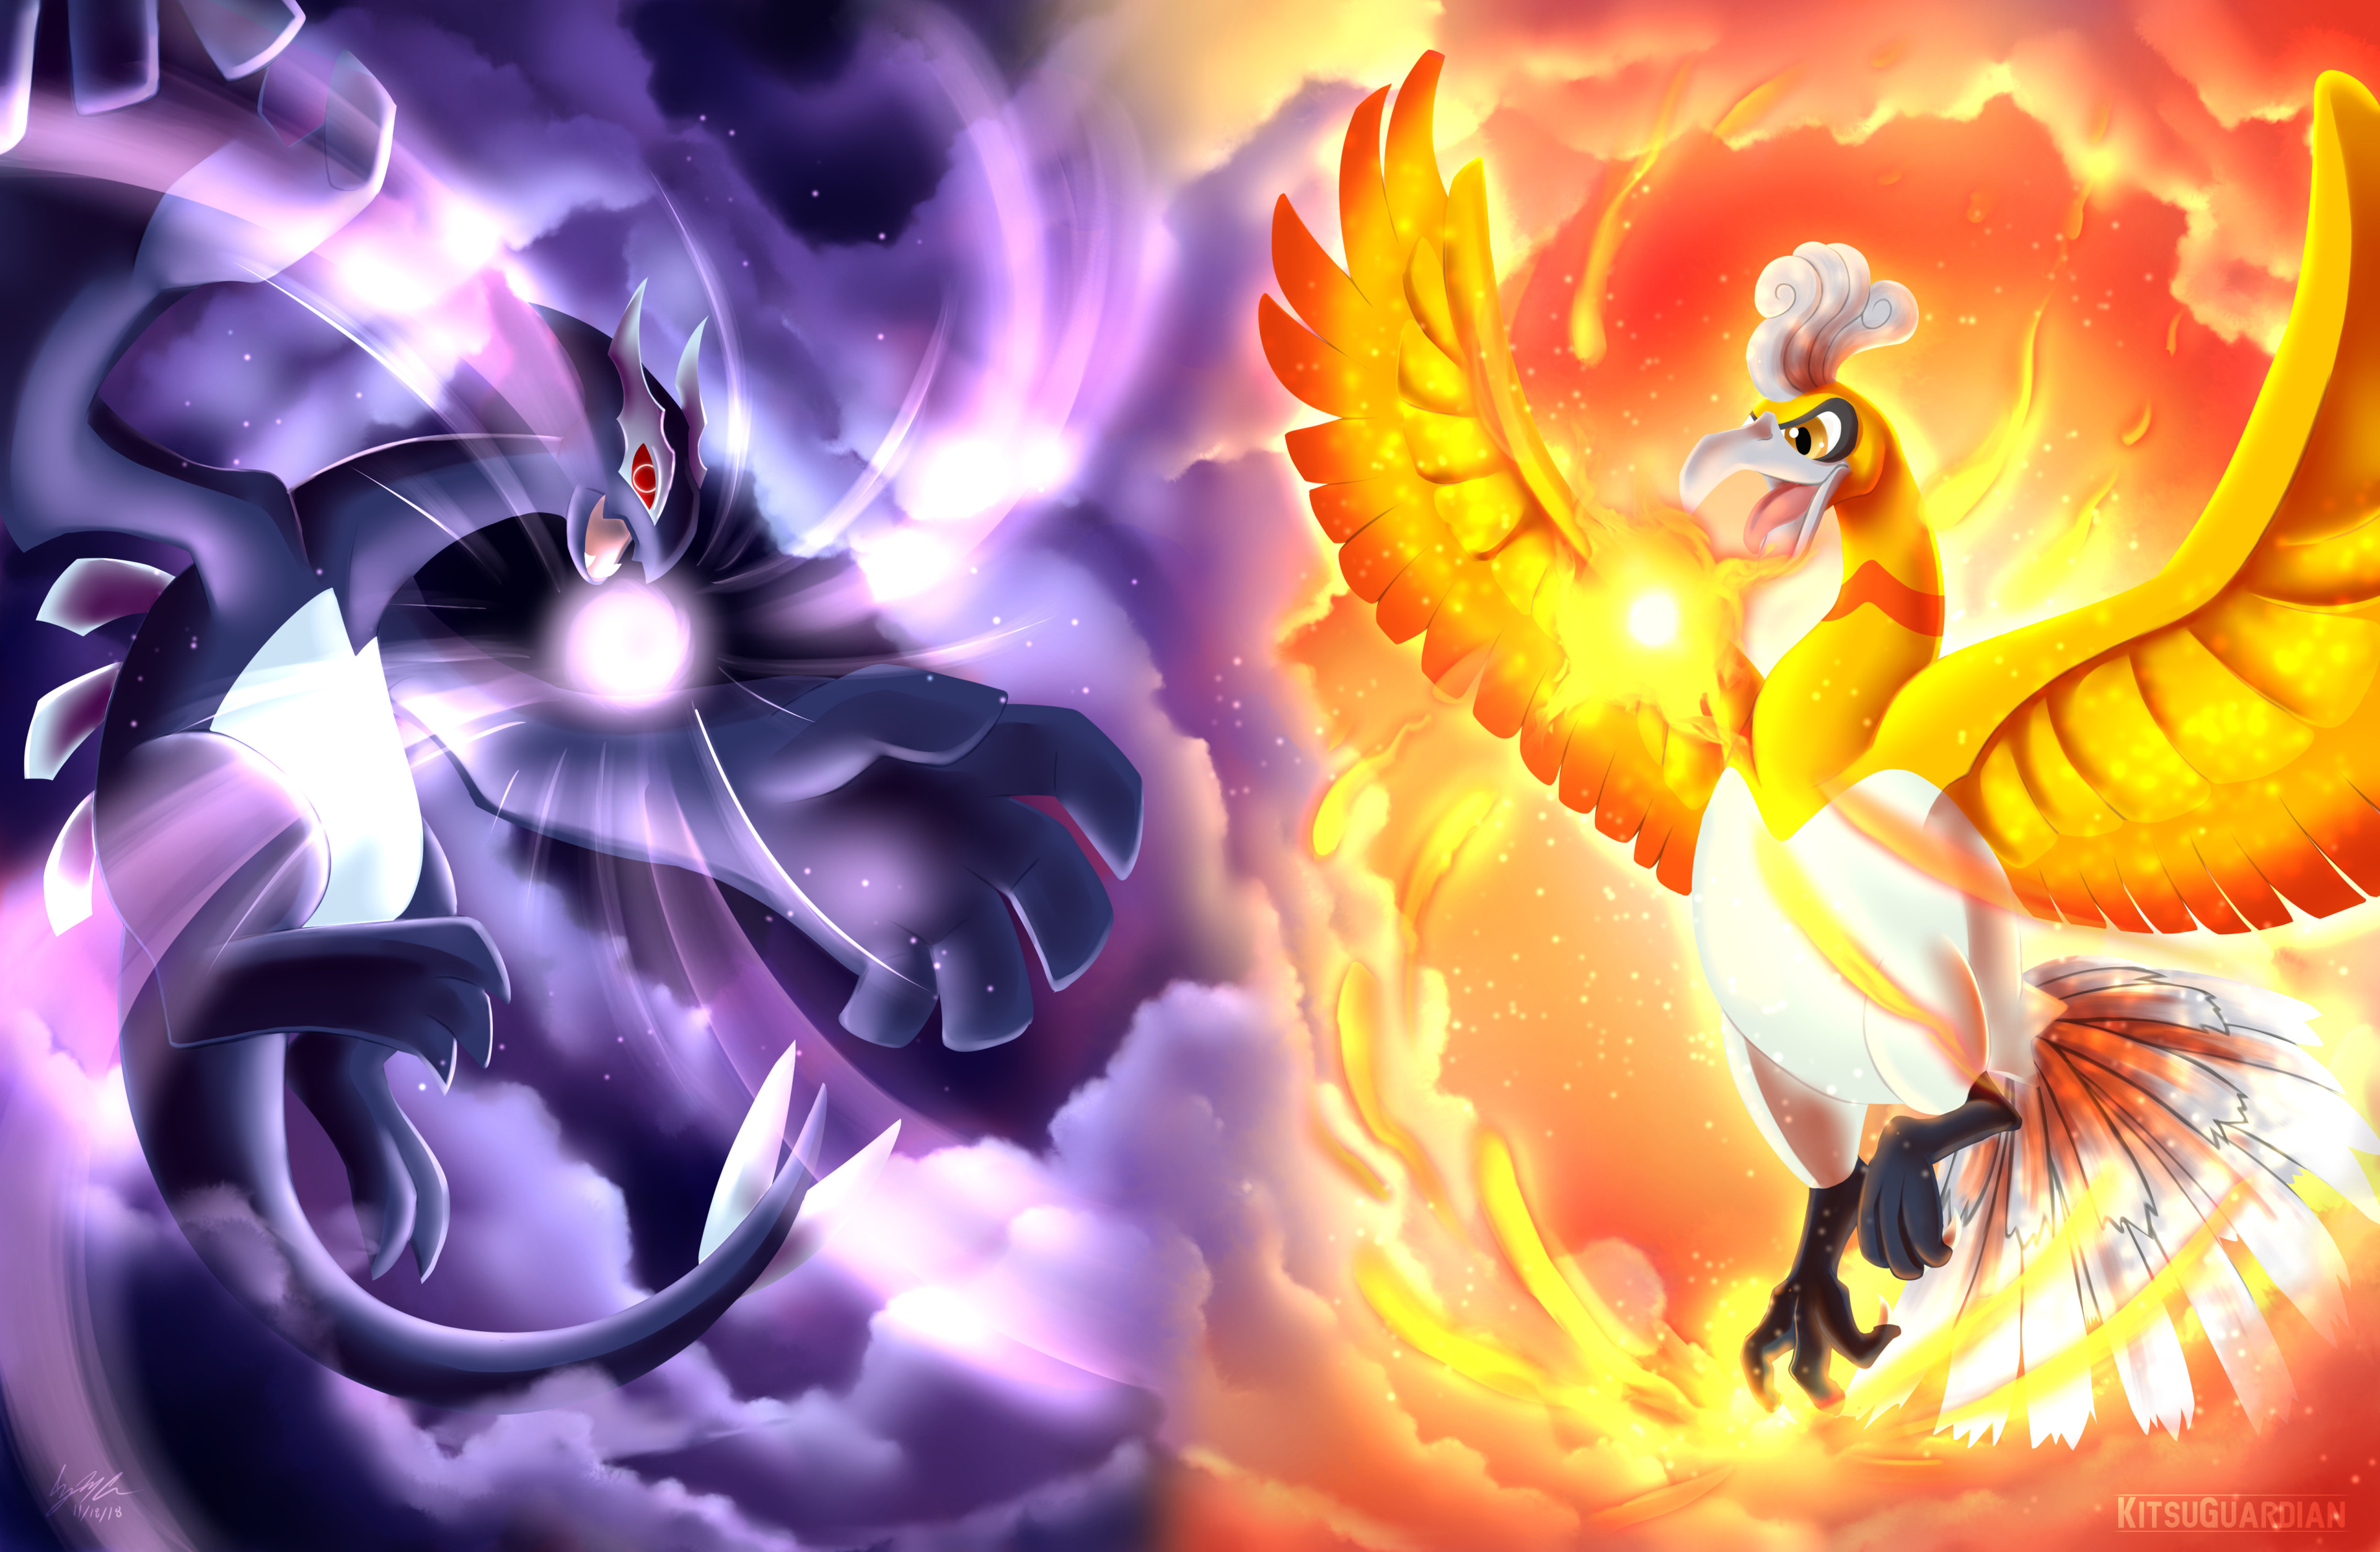 Lugia vs Ho-oh  Pokémon Amino